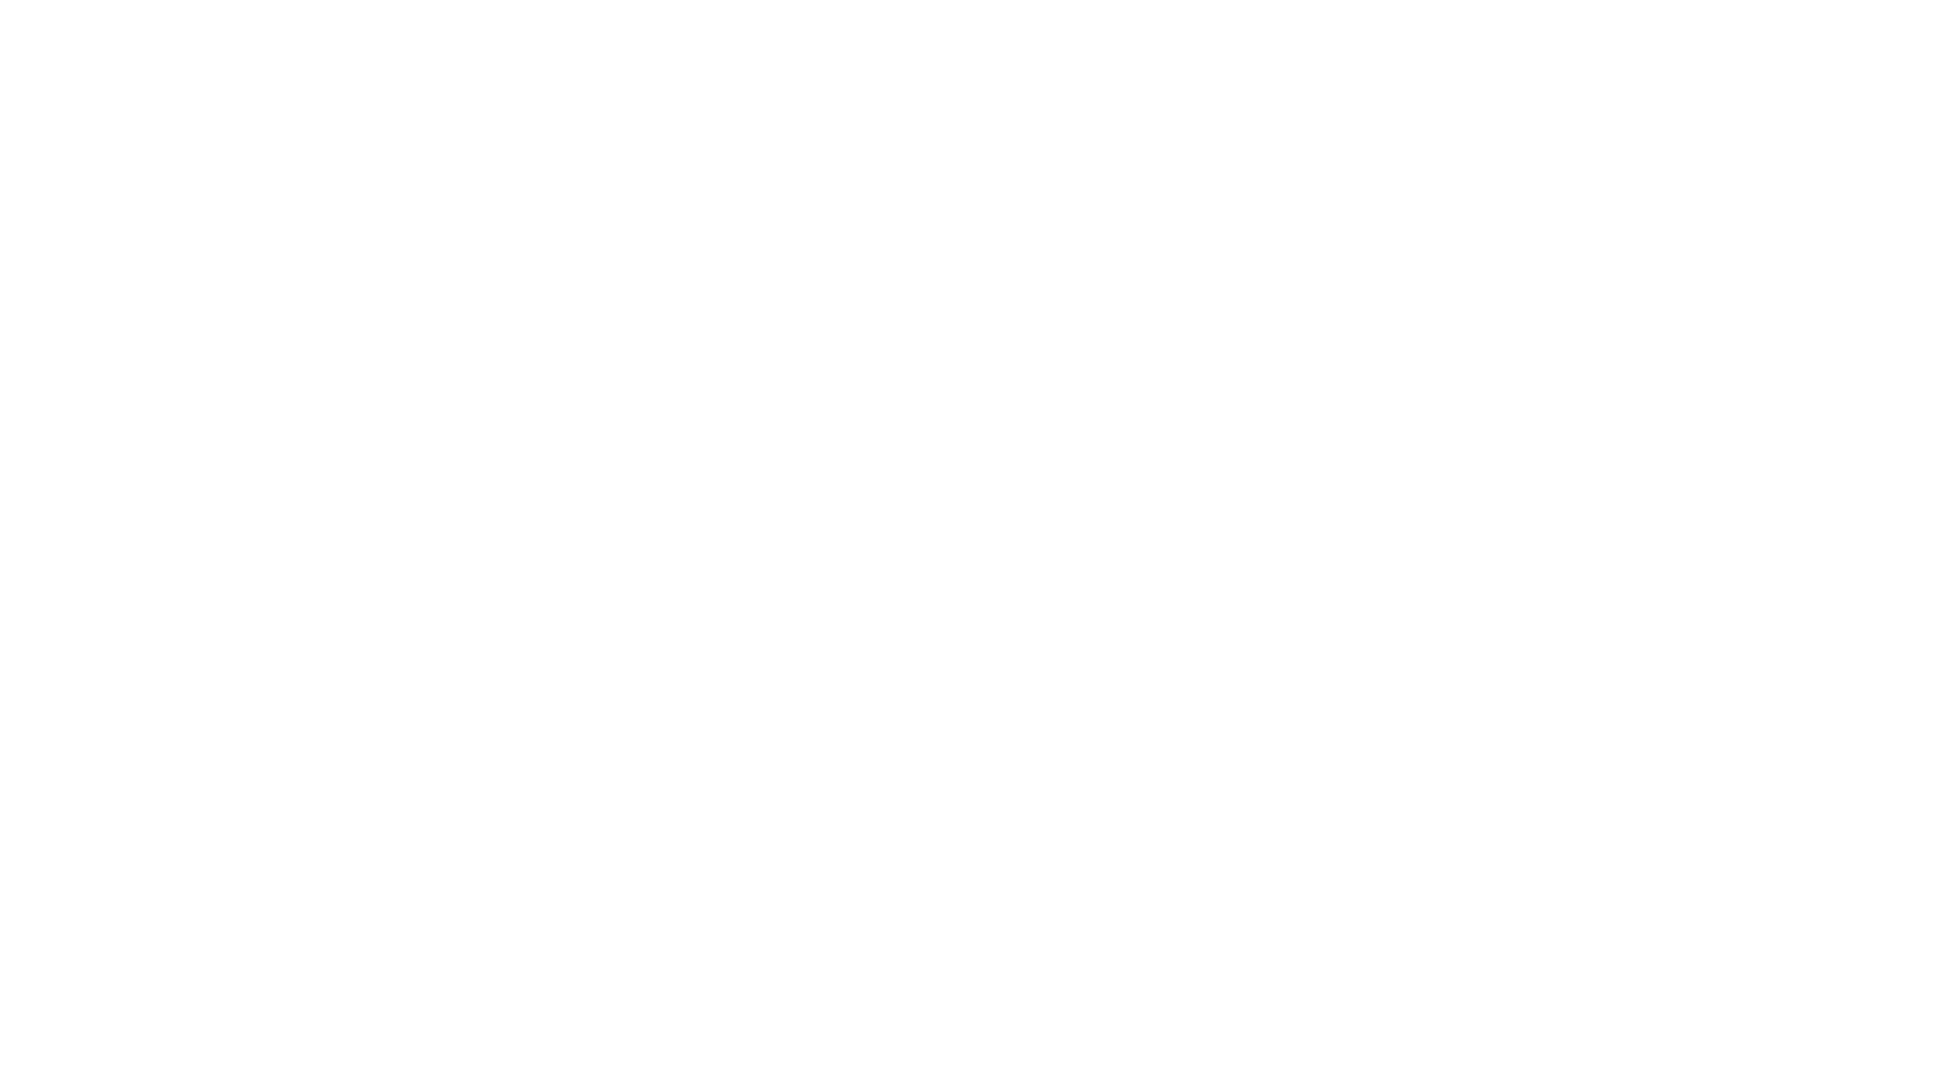 Tim Peters